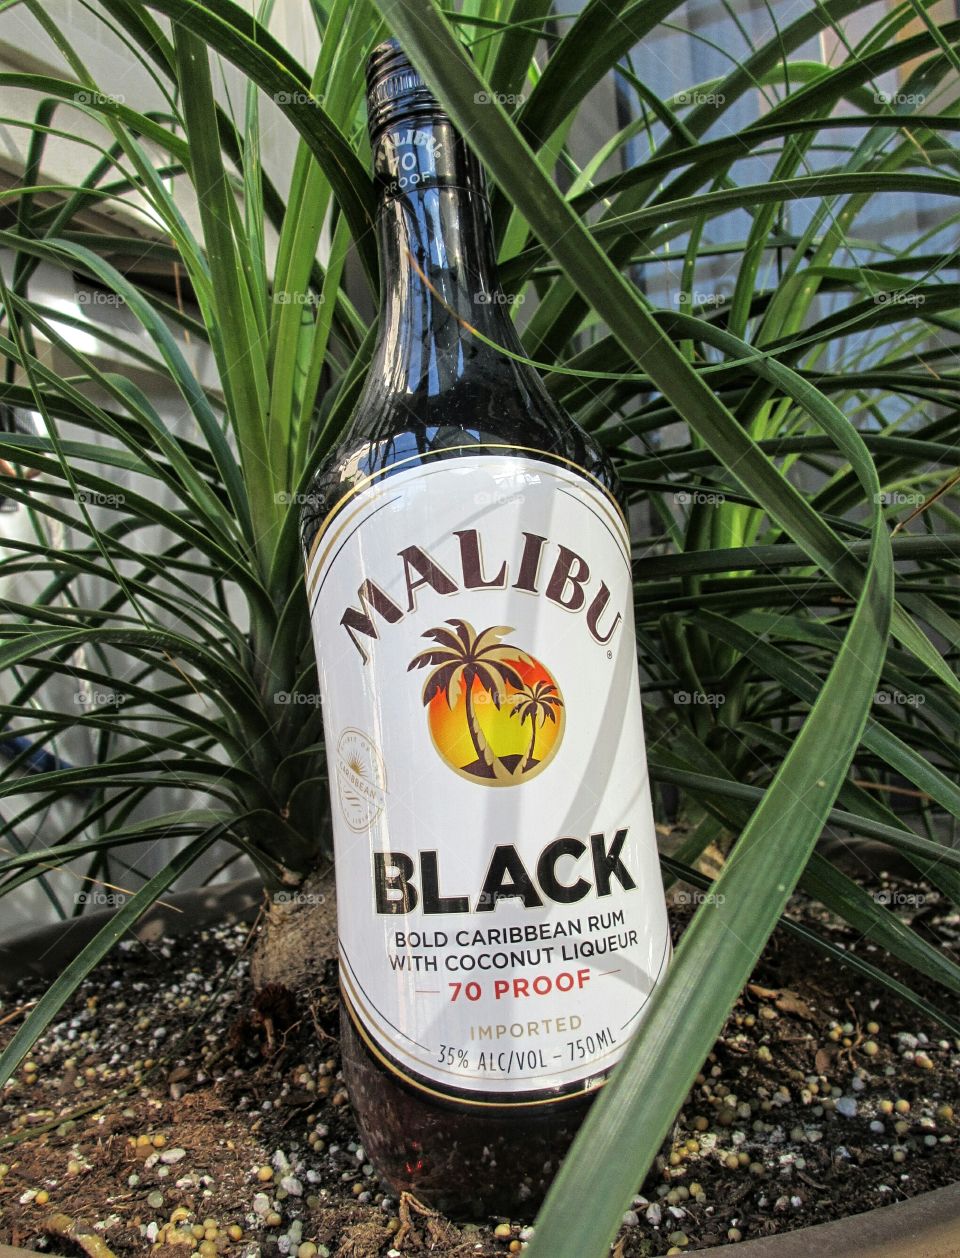 Malibu Black Rum. Malibu Black bold Caribbean rum in potted palm